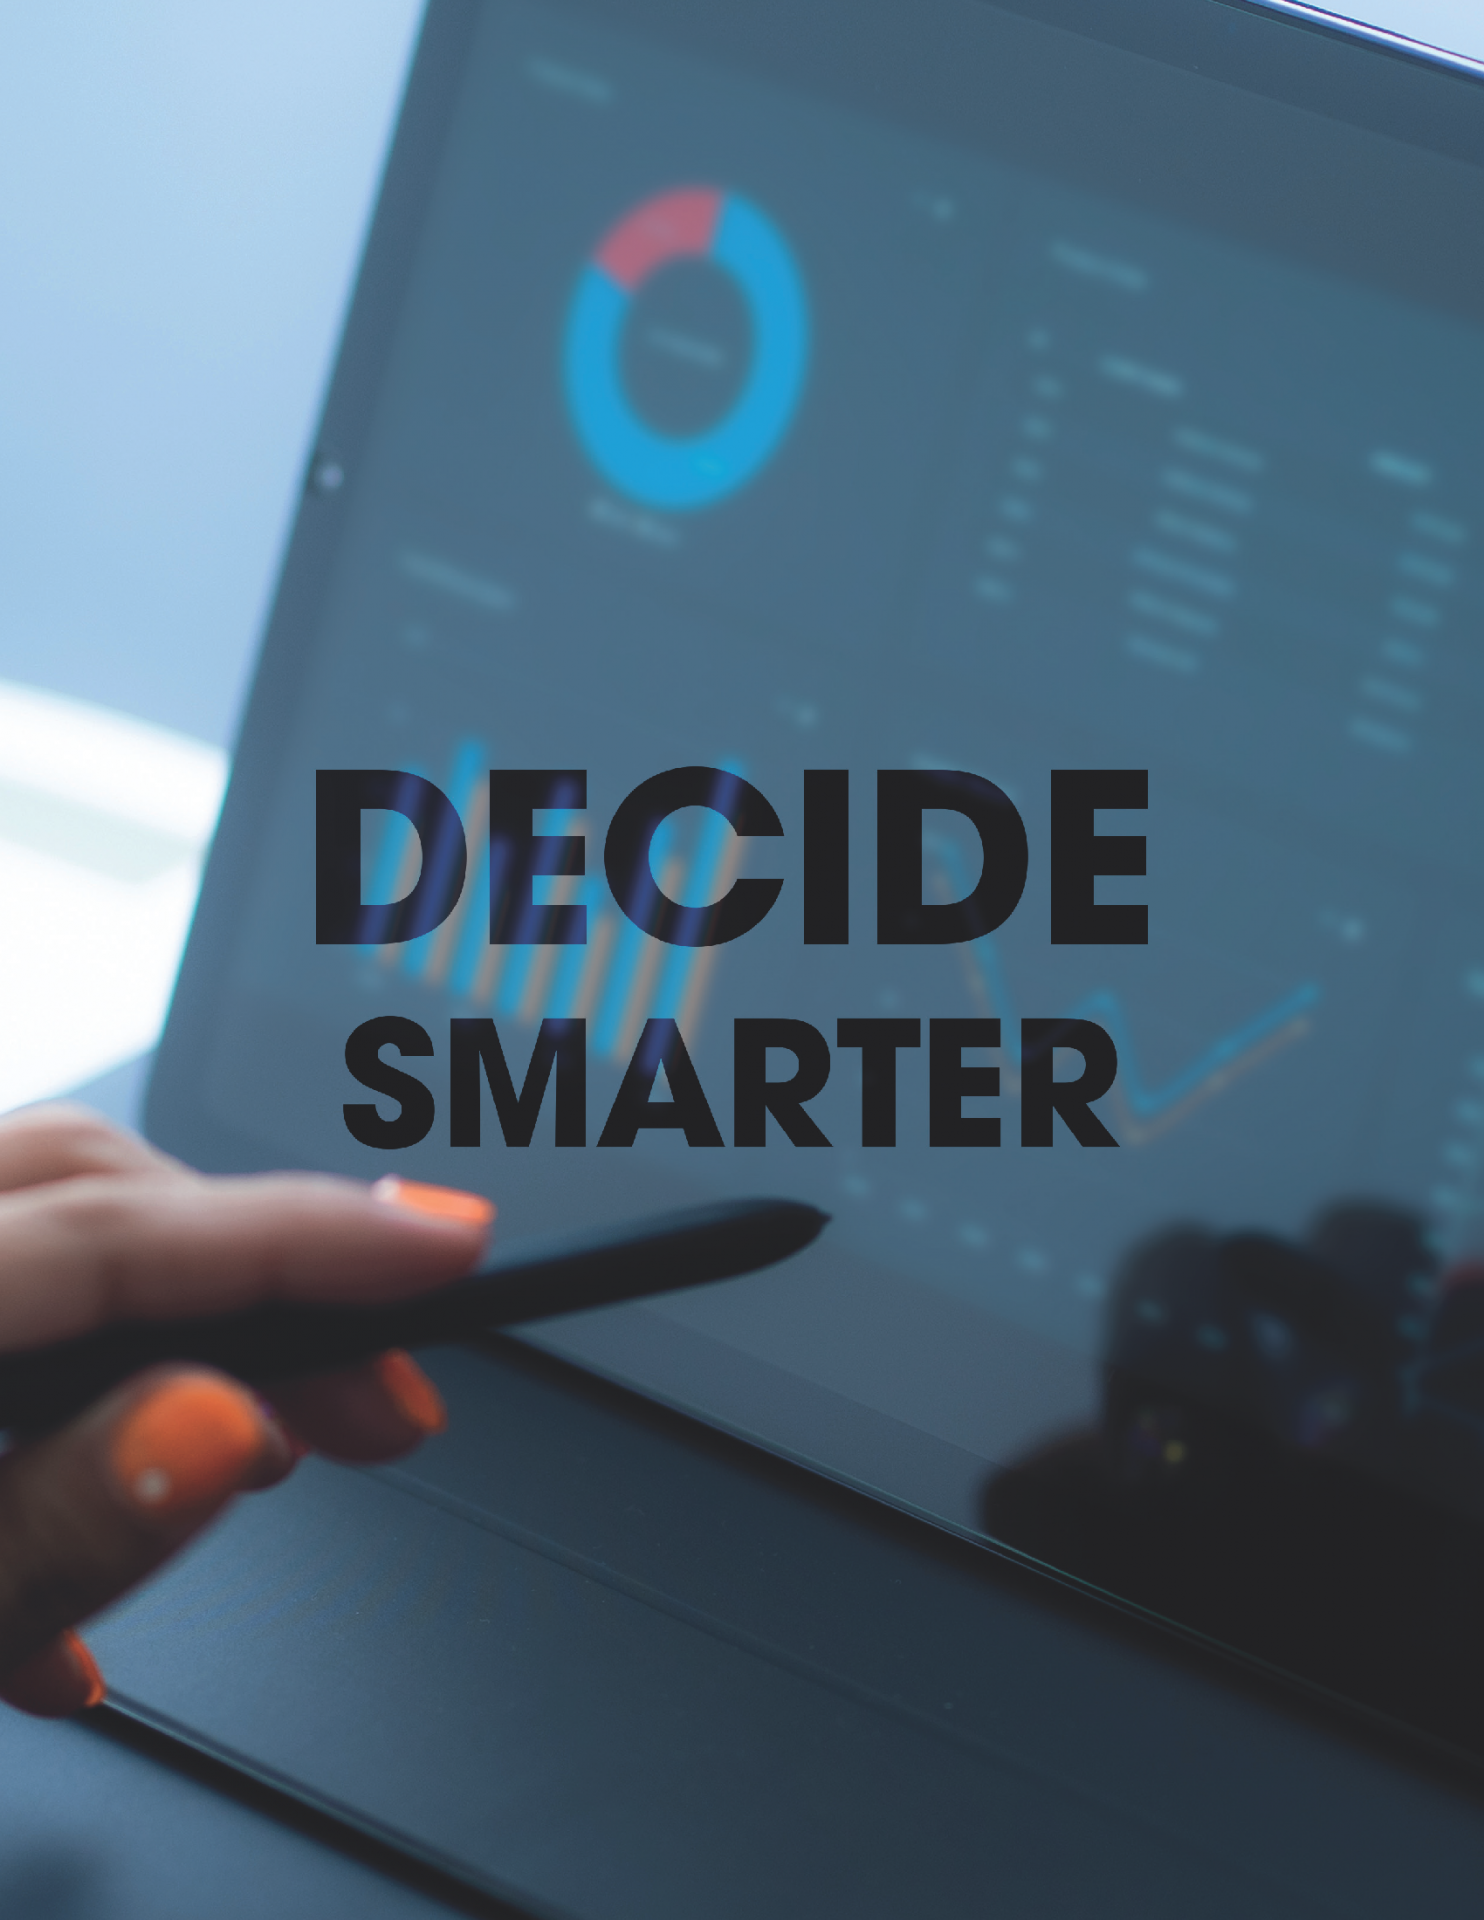 Market decide smarter